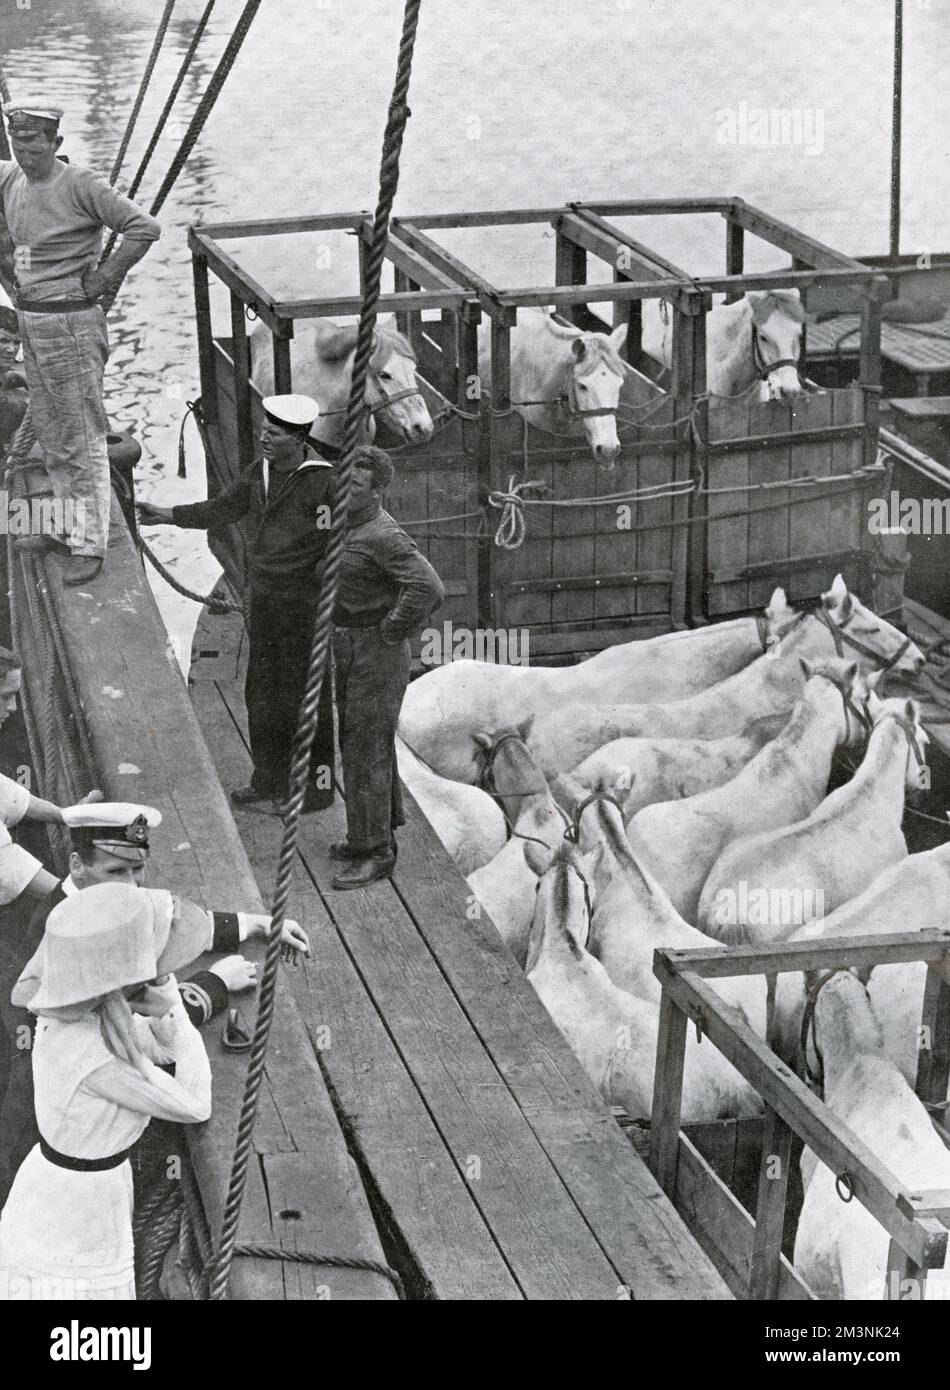 Prendendo venti pony siberiani a bordo della Terra Nova prima che la nave portatrice del capitano Scott e della sua squadra partì dalla Nuova Zelanda, verso l'Antartide e il tentativo di Scott di essere il primo a raggiungere il Polo Sud. Data: 1911 Foto Stock